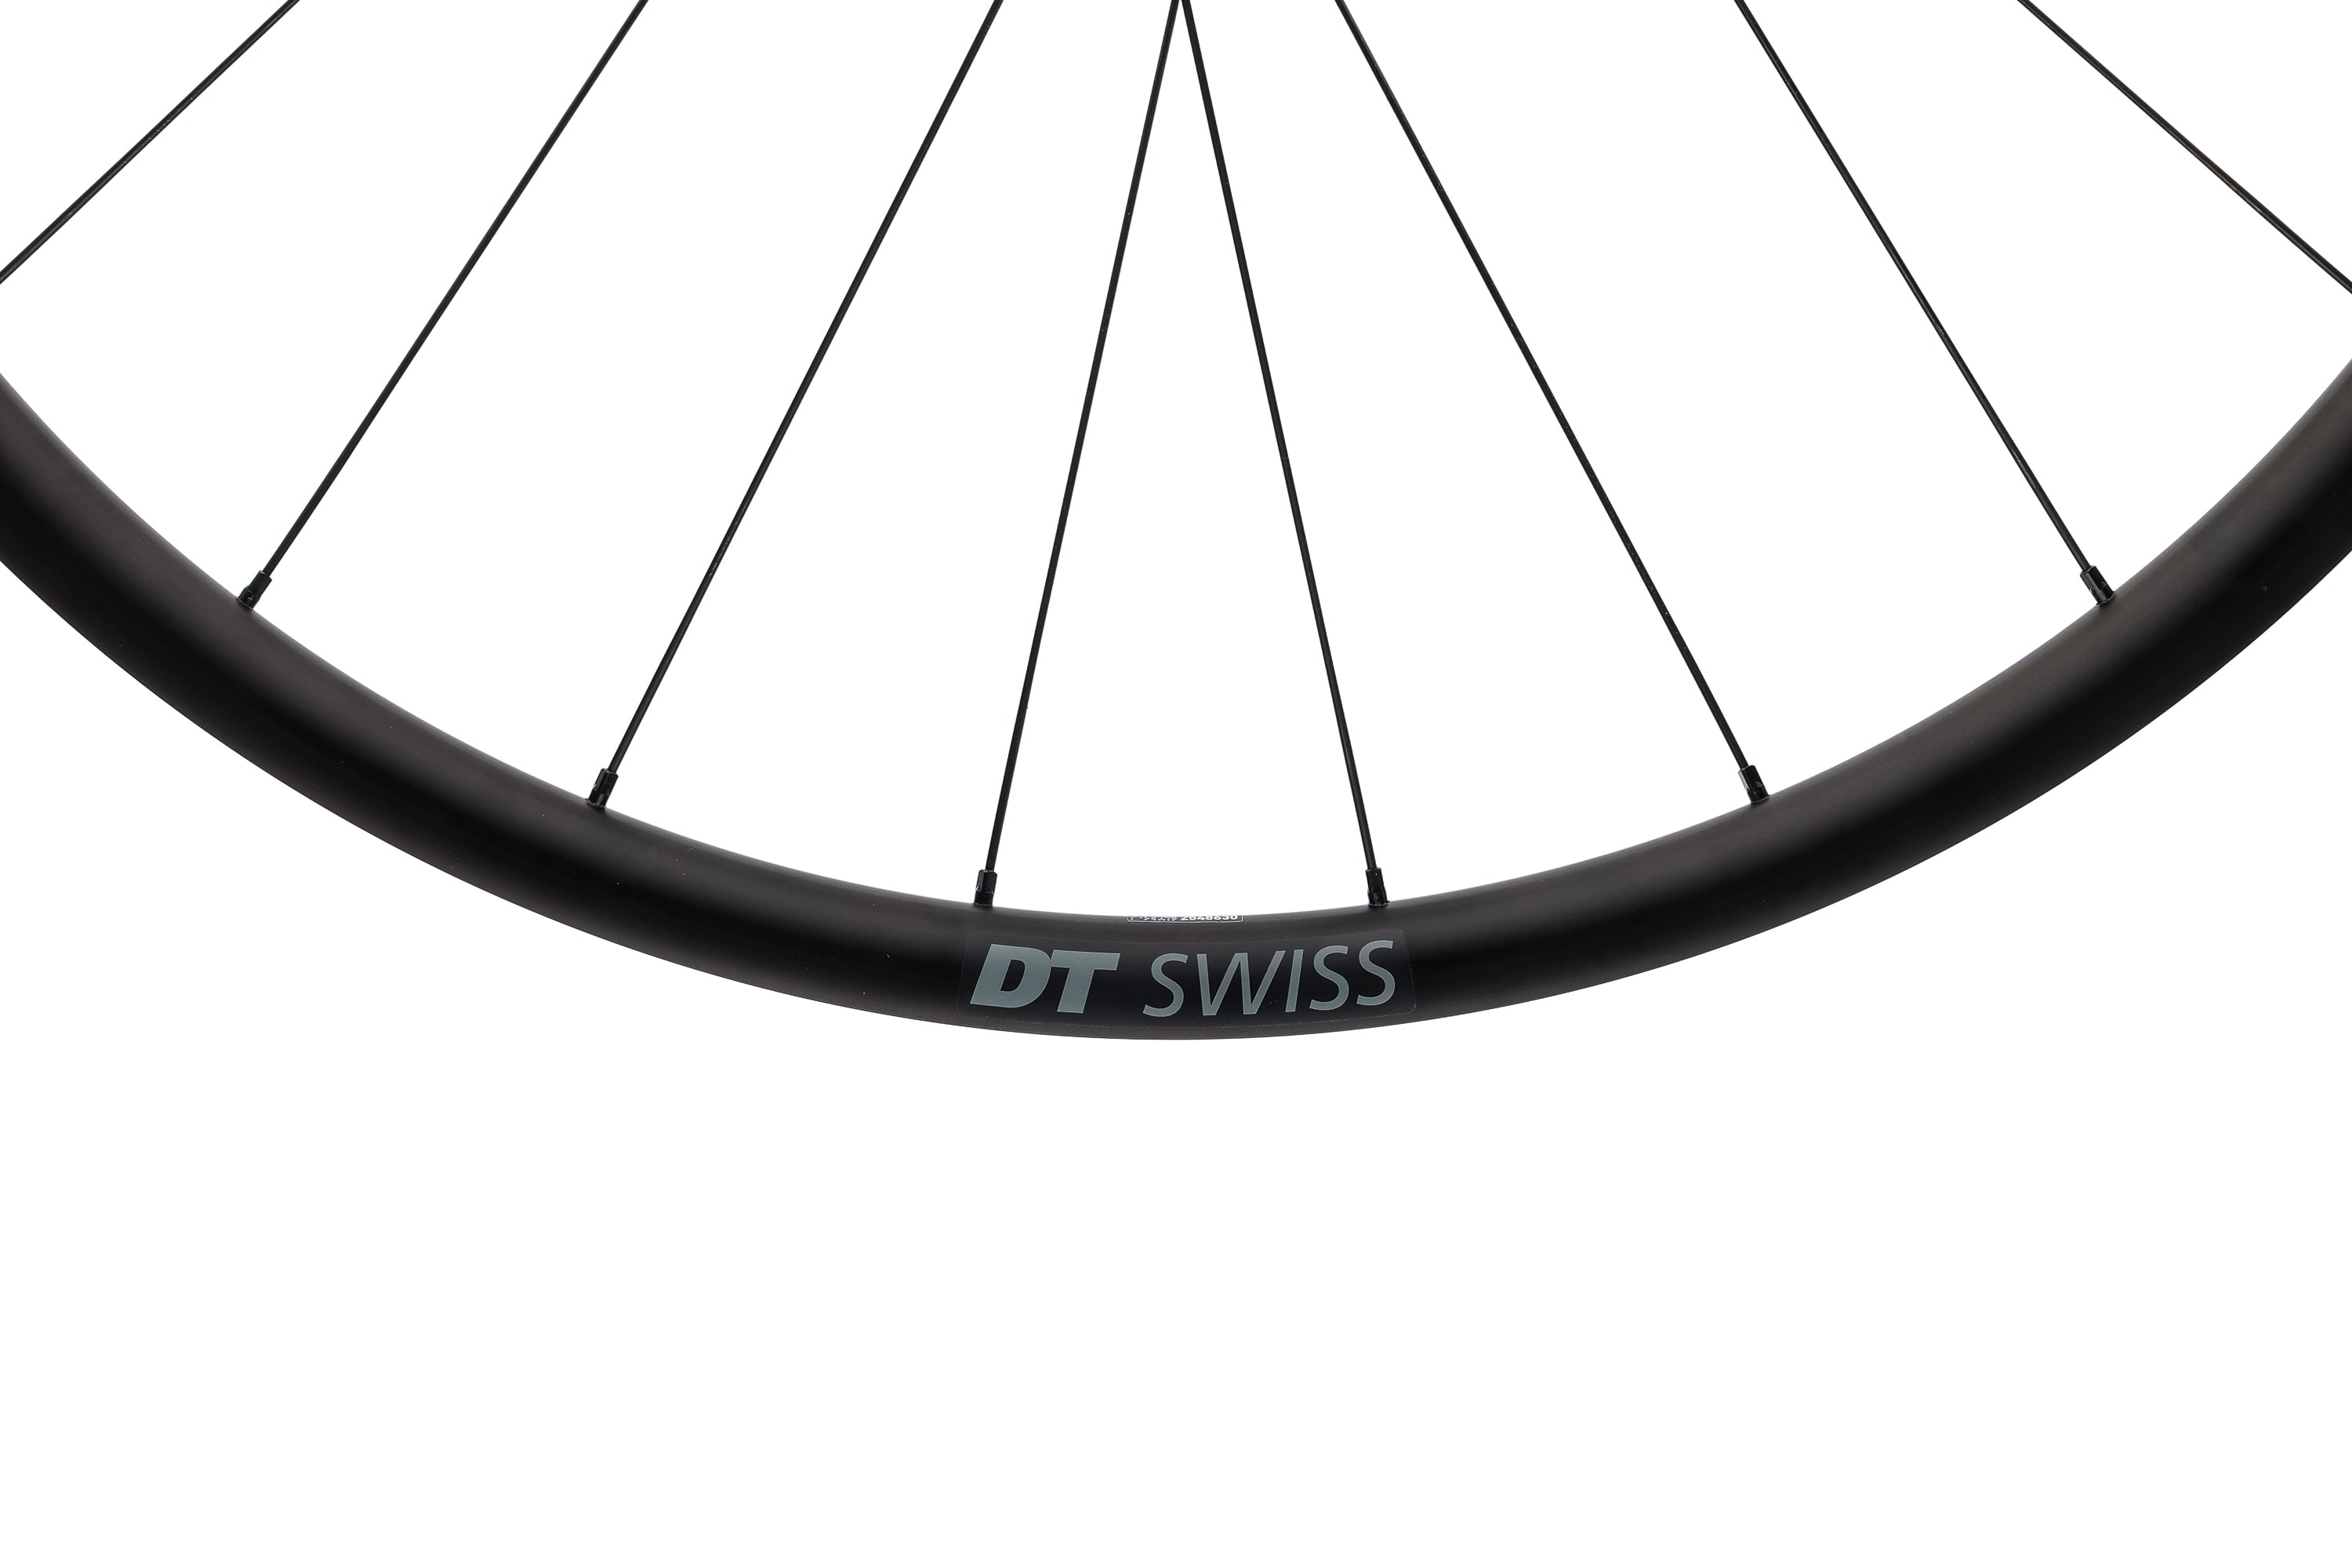 DT Swiss Endurance LN Disc Aluminum Tubeless 700c Wheelset